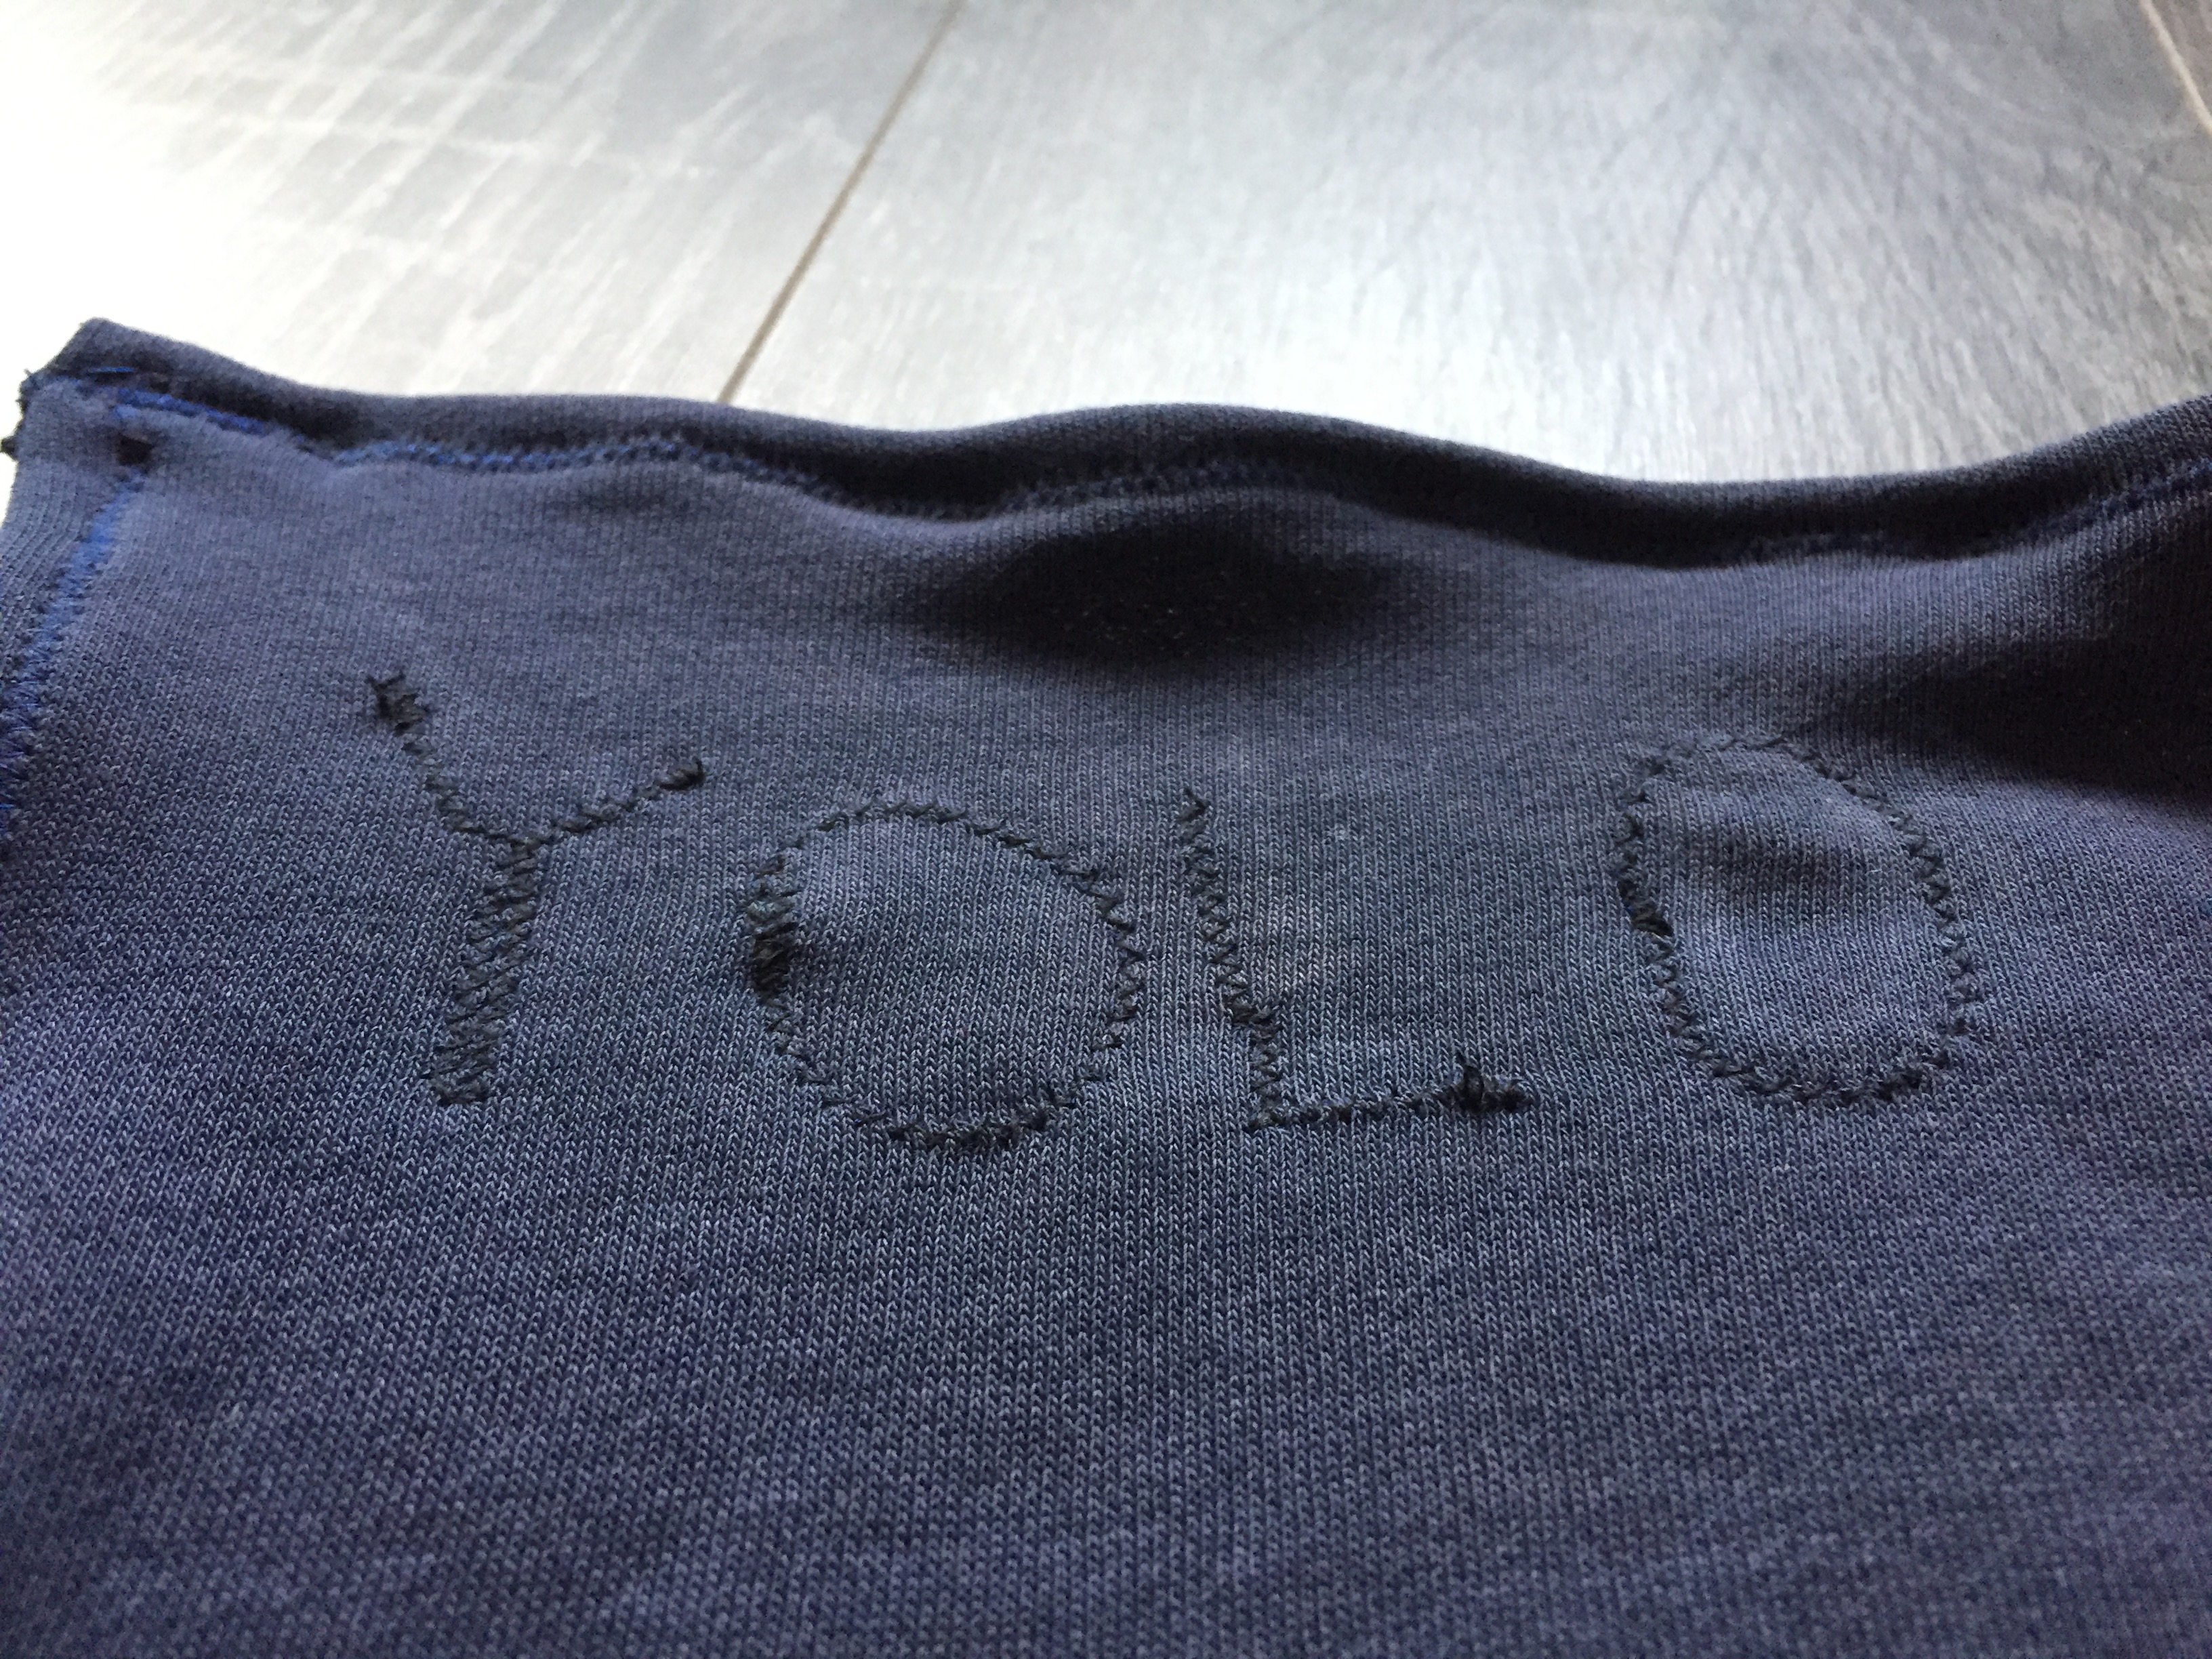 YOLO handkerchief